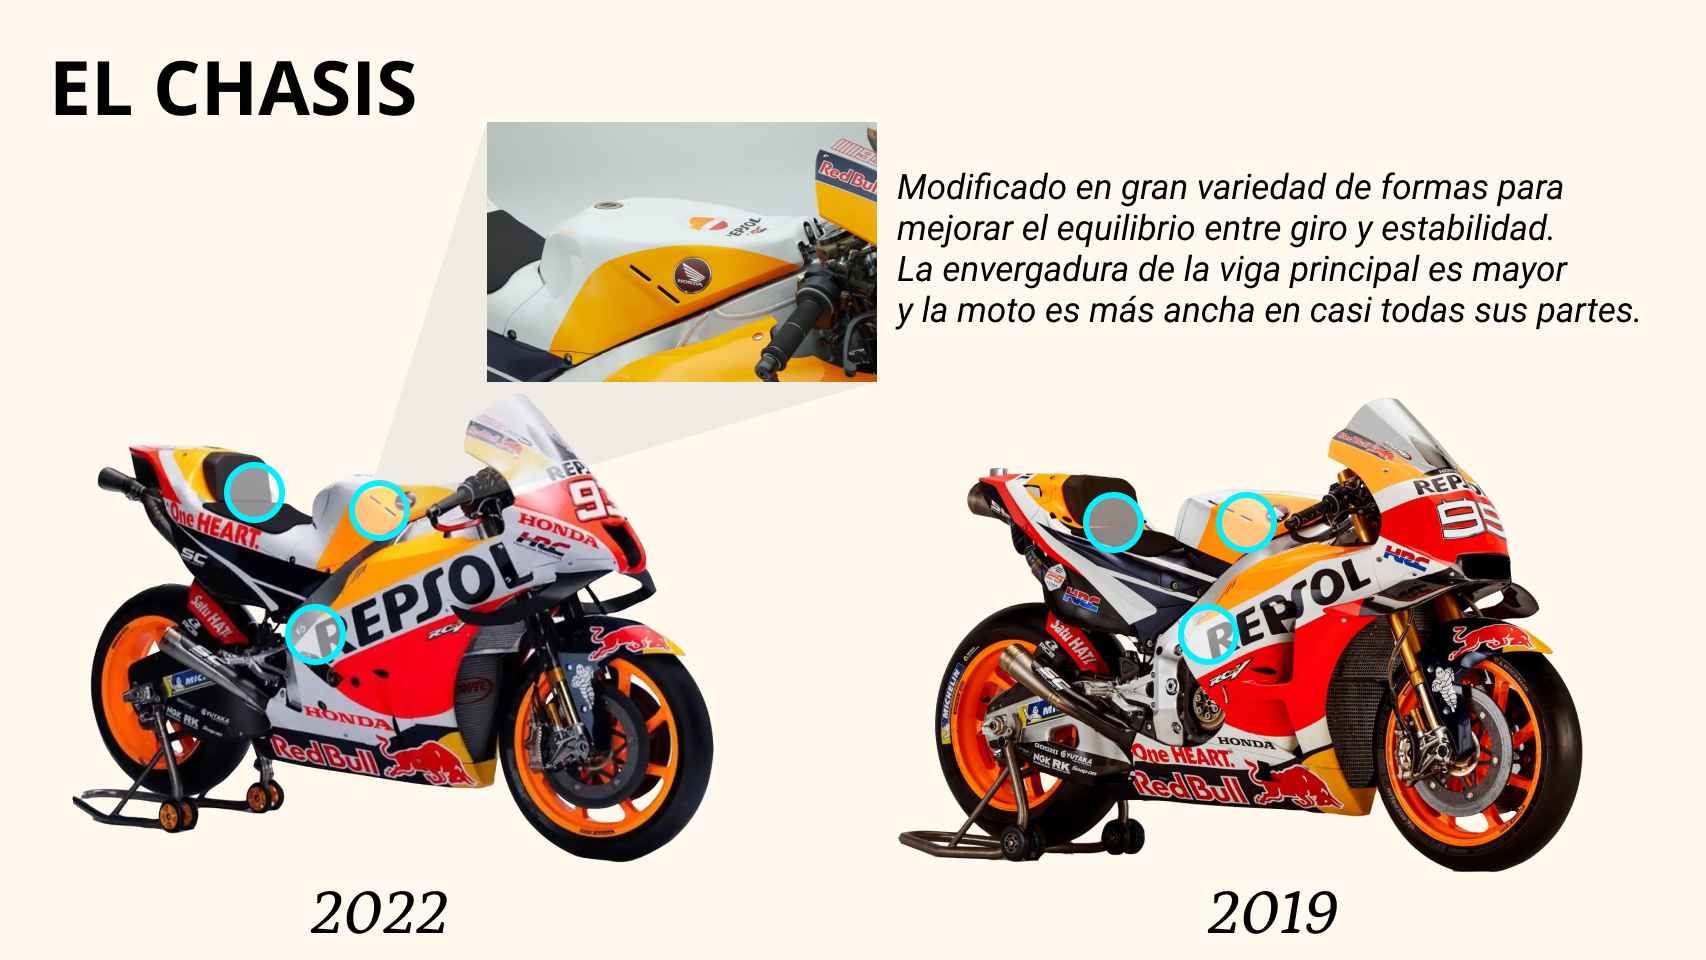 Chasis de la Honda 213V del equipo Repsol en 2022